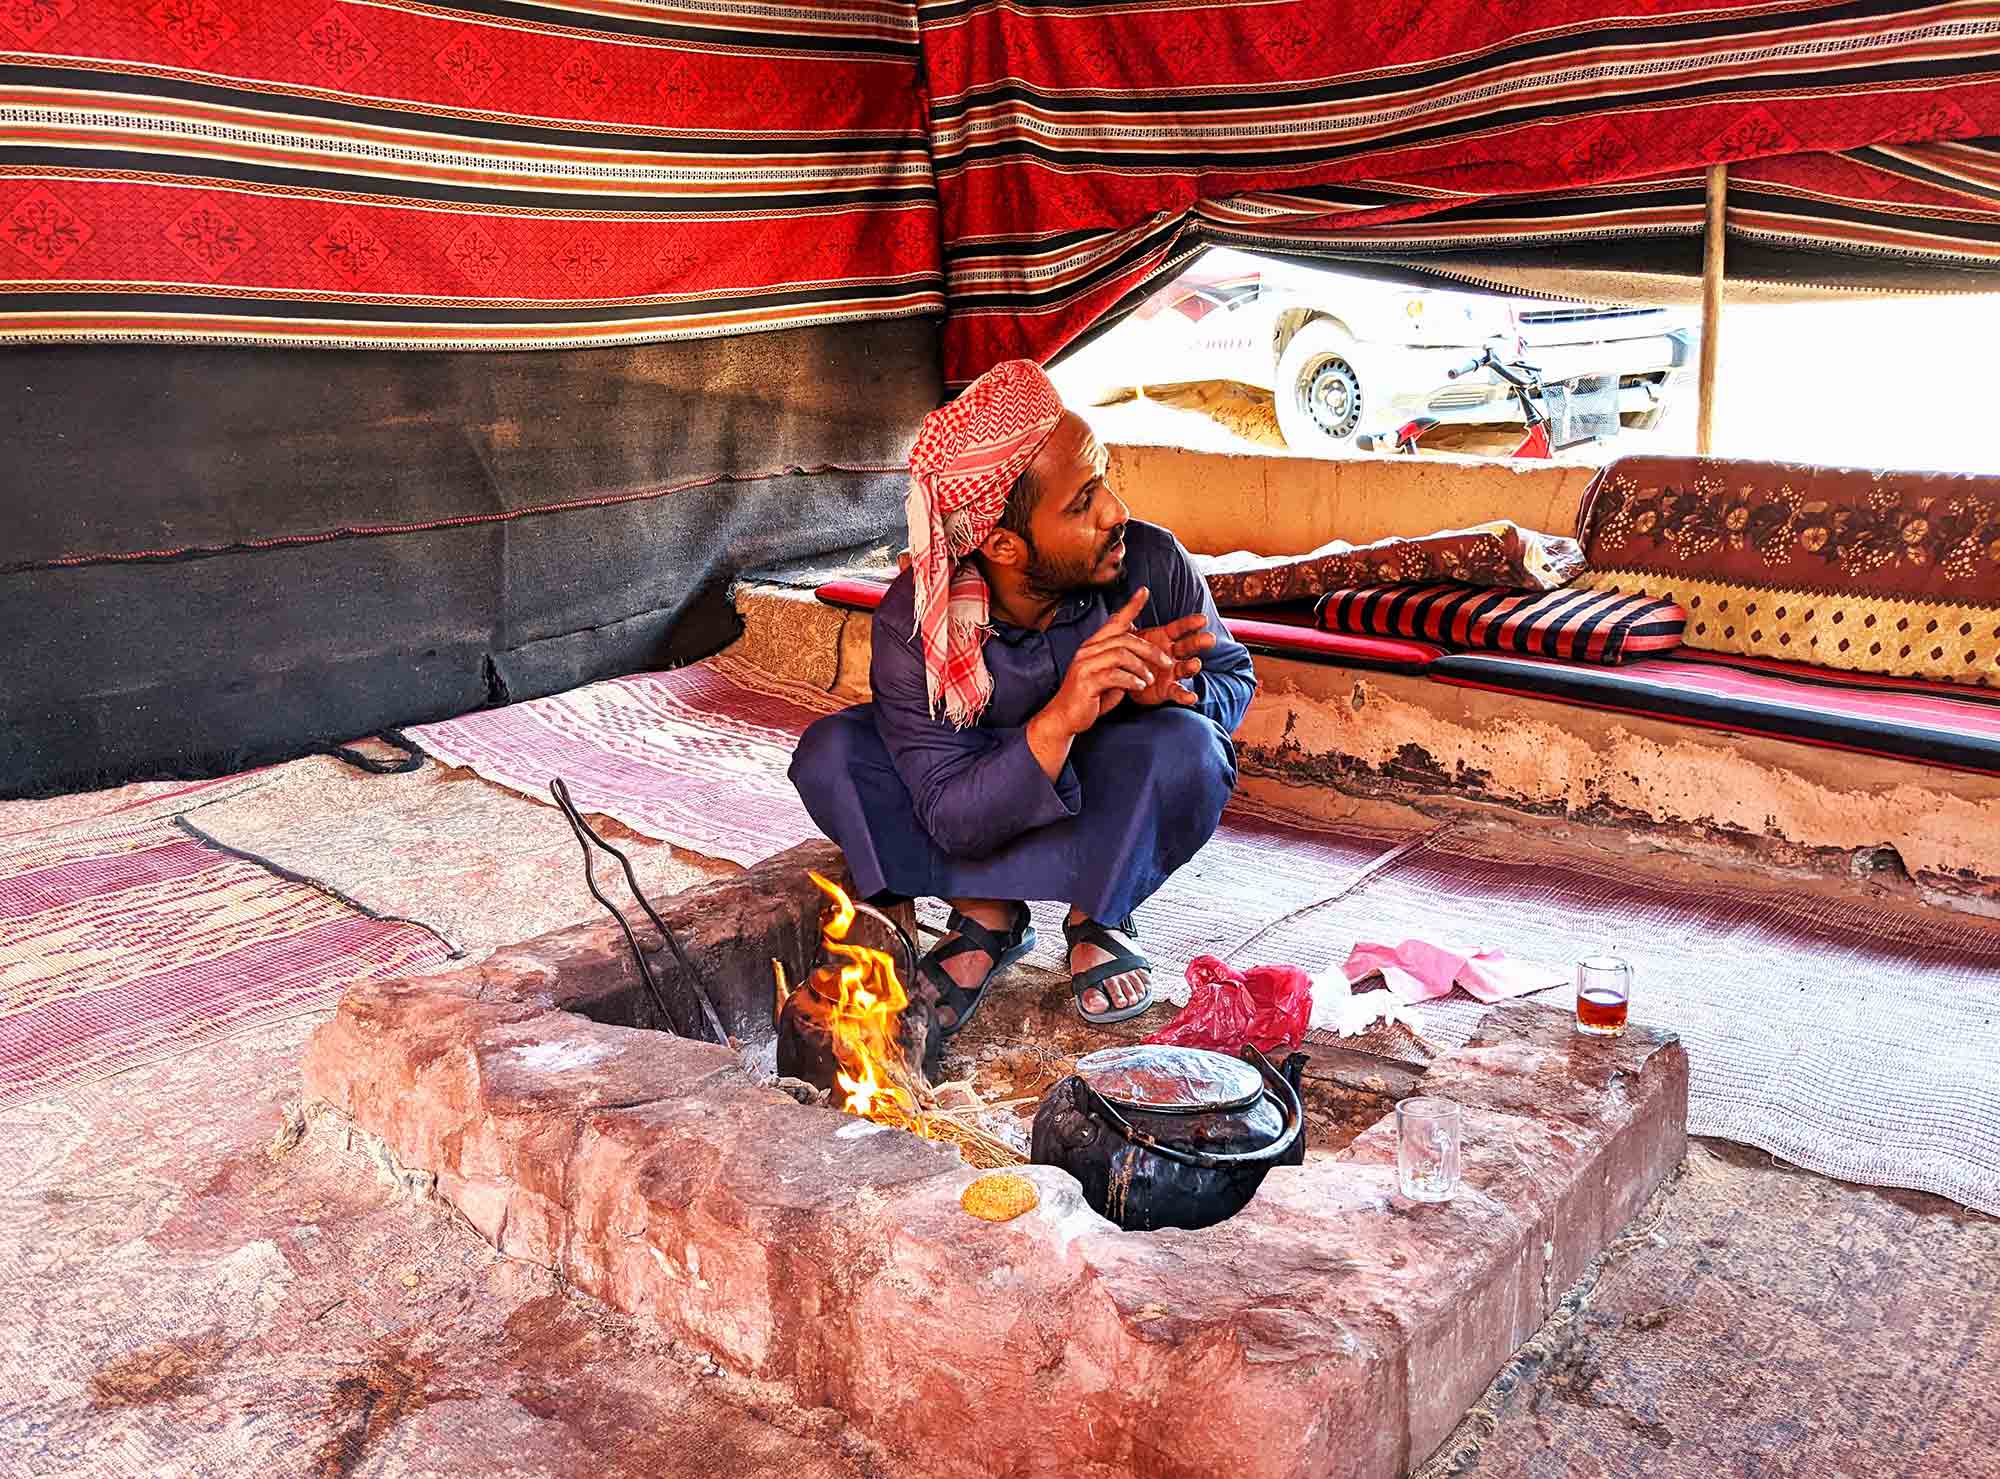 Bedouin man making tea over an open fire in the deserts of Wadi Rum, Jordan